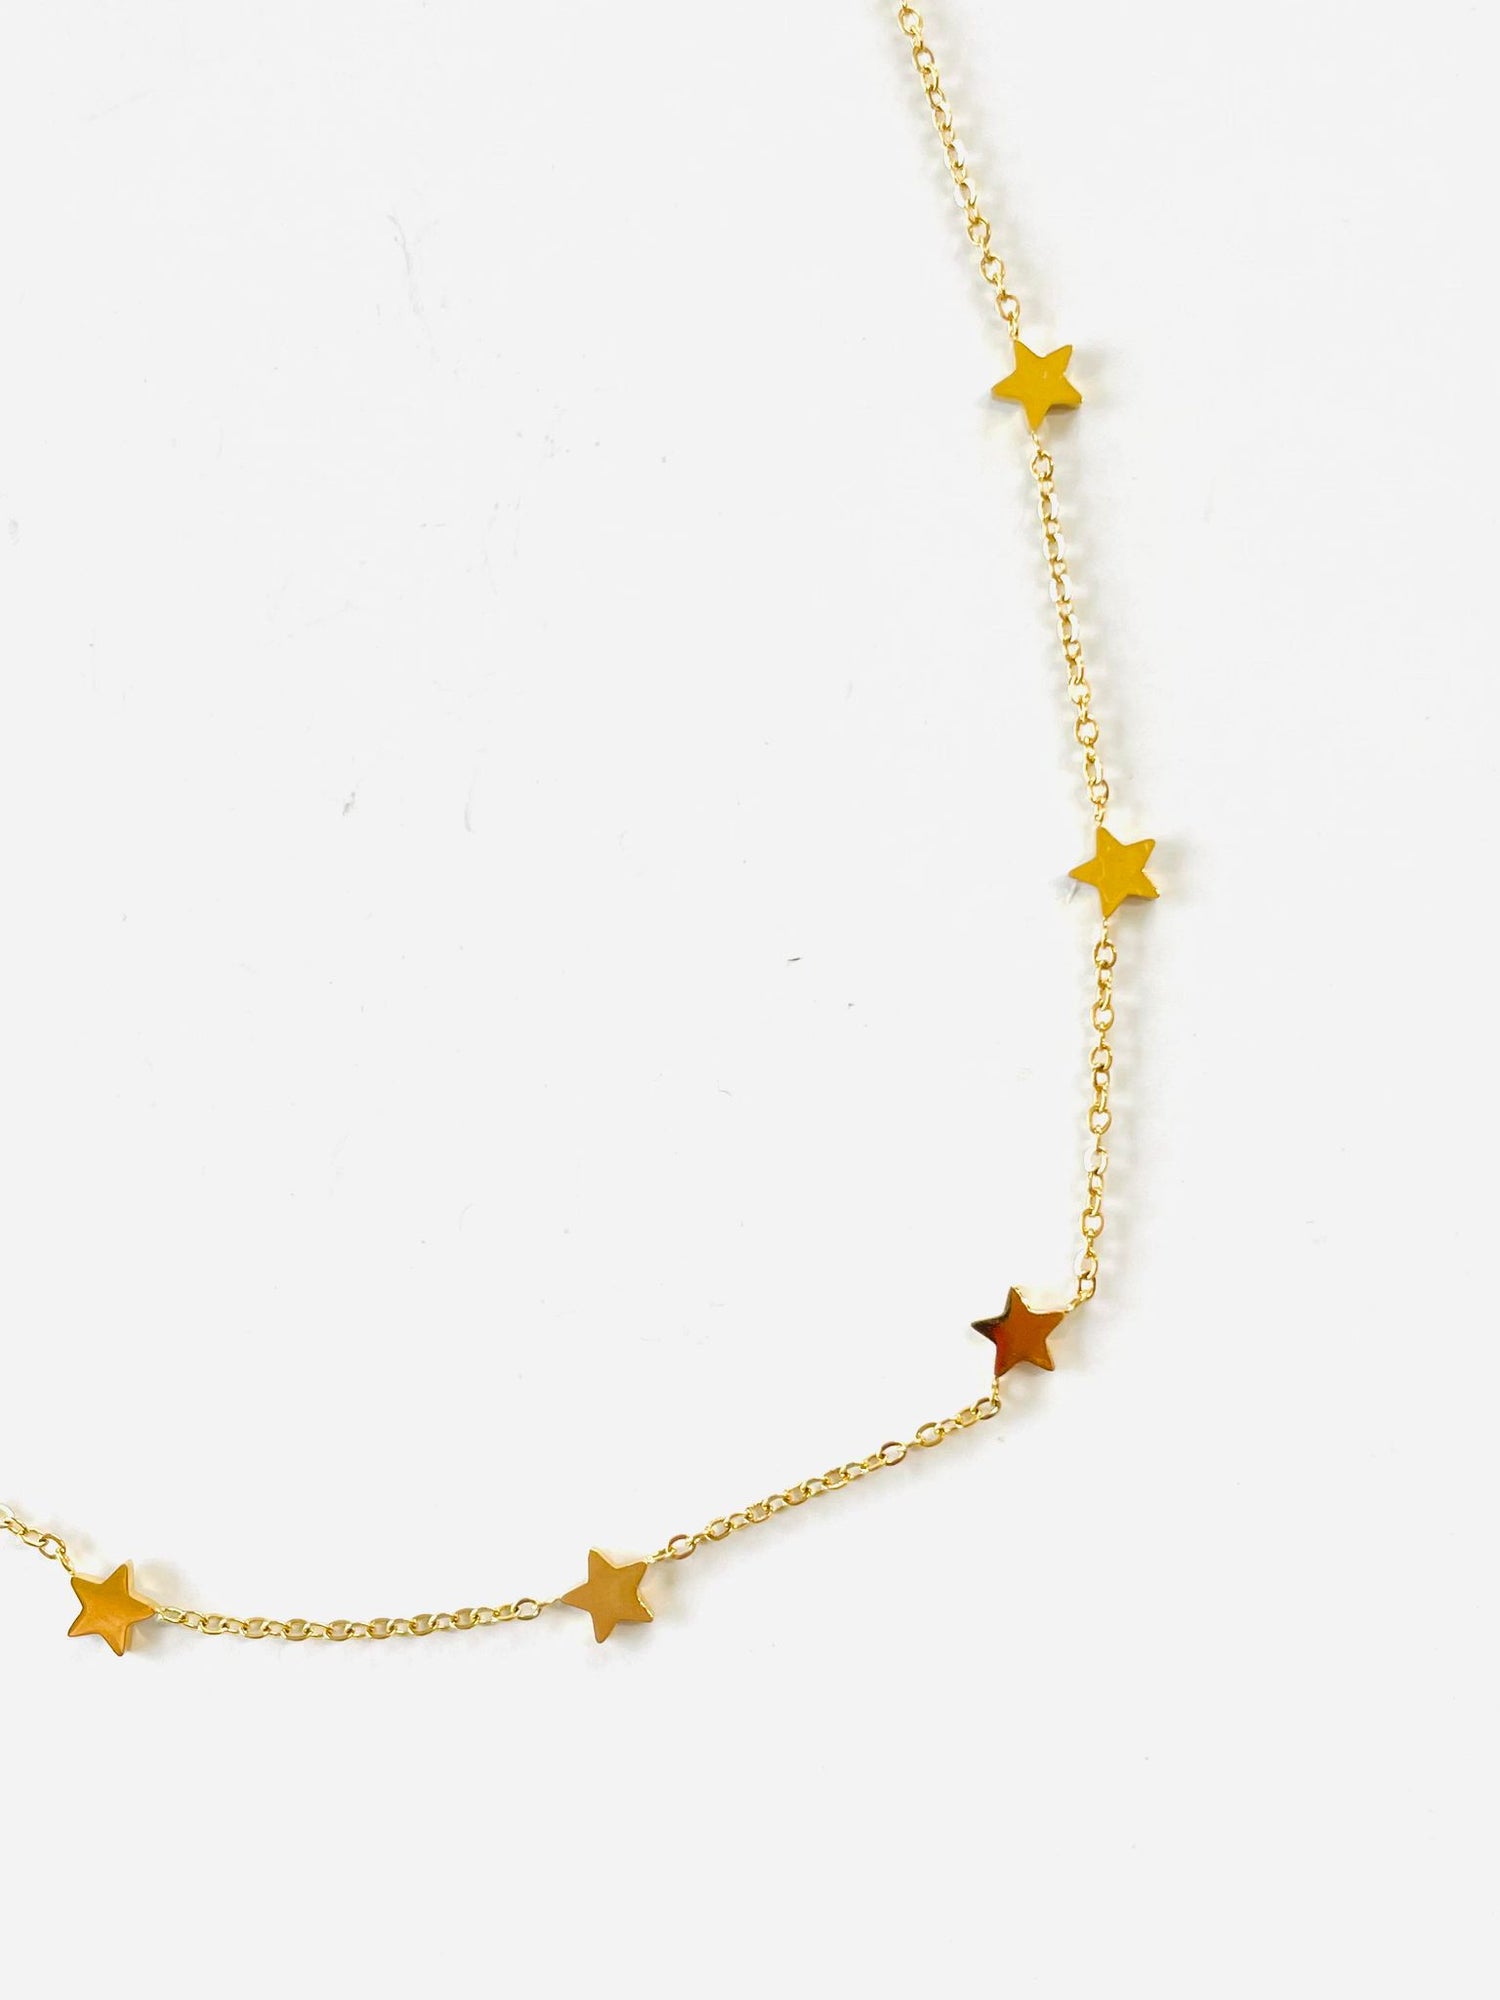 Twinkling Star Necklace {Waterproof Jewelry!}